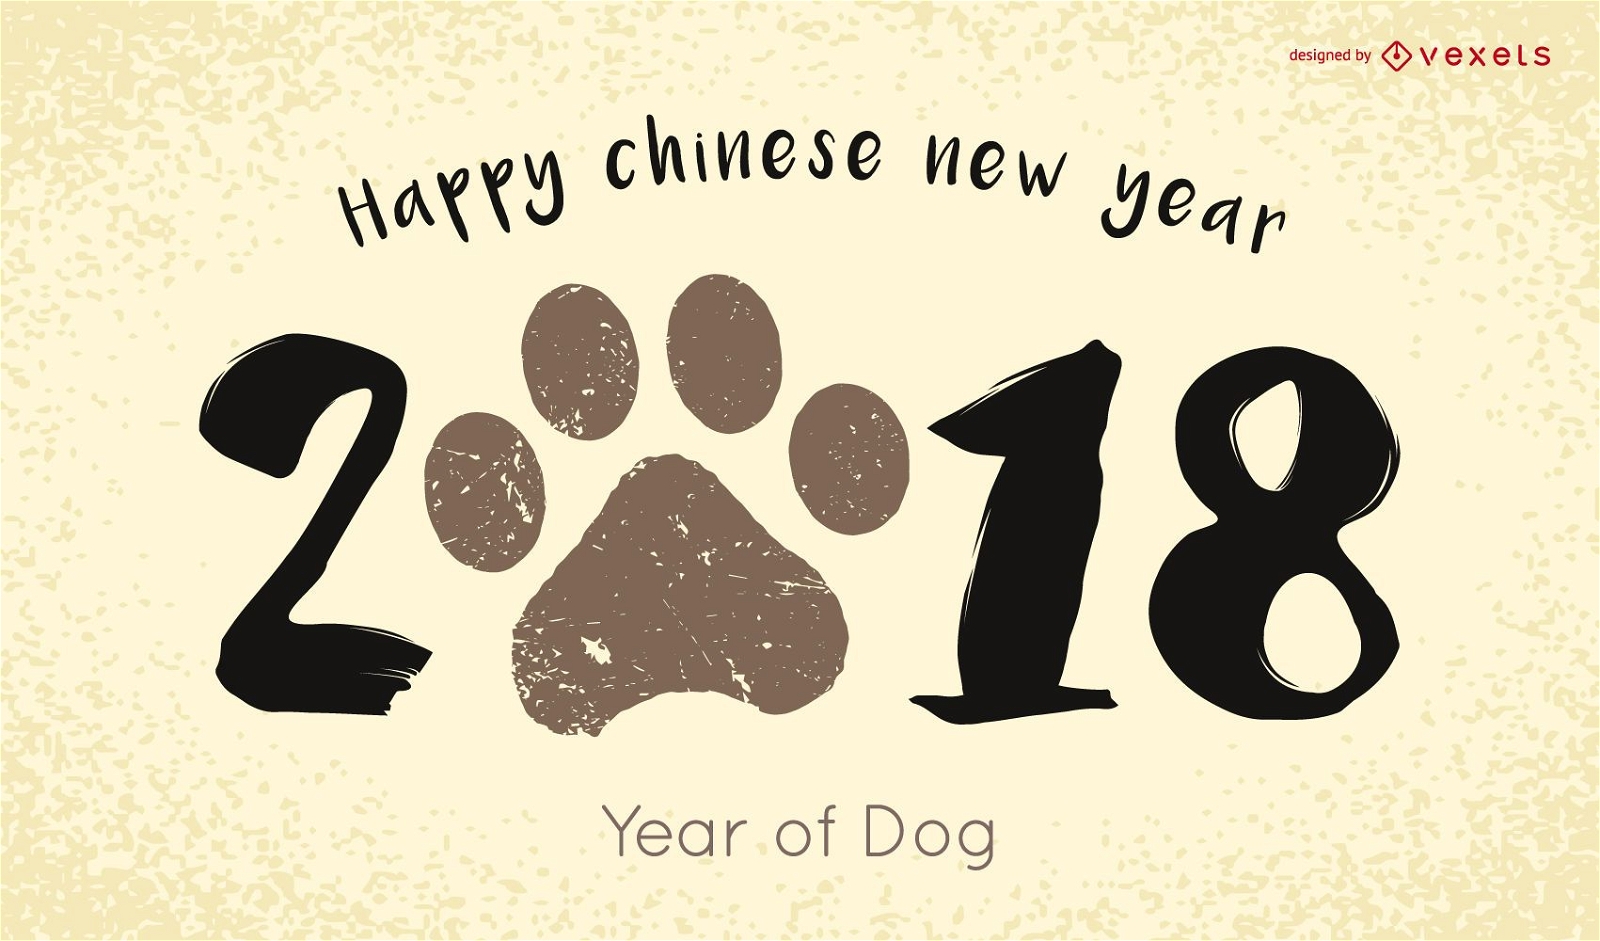 2018 año nuevo chino